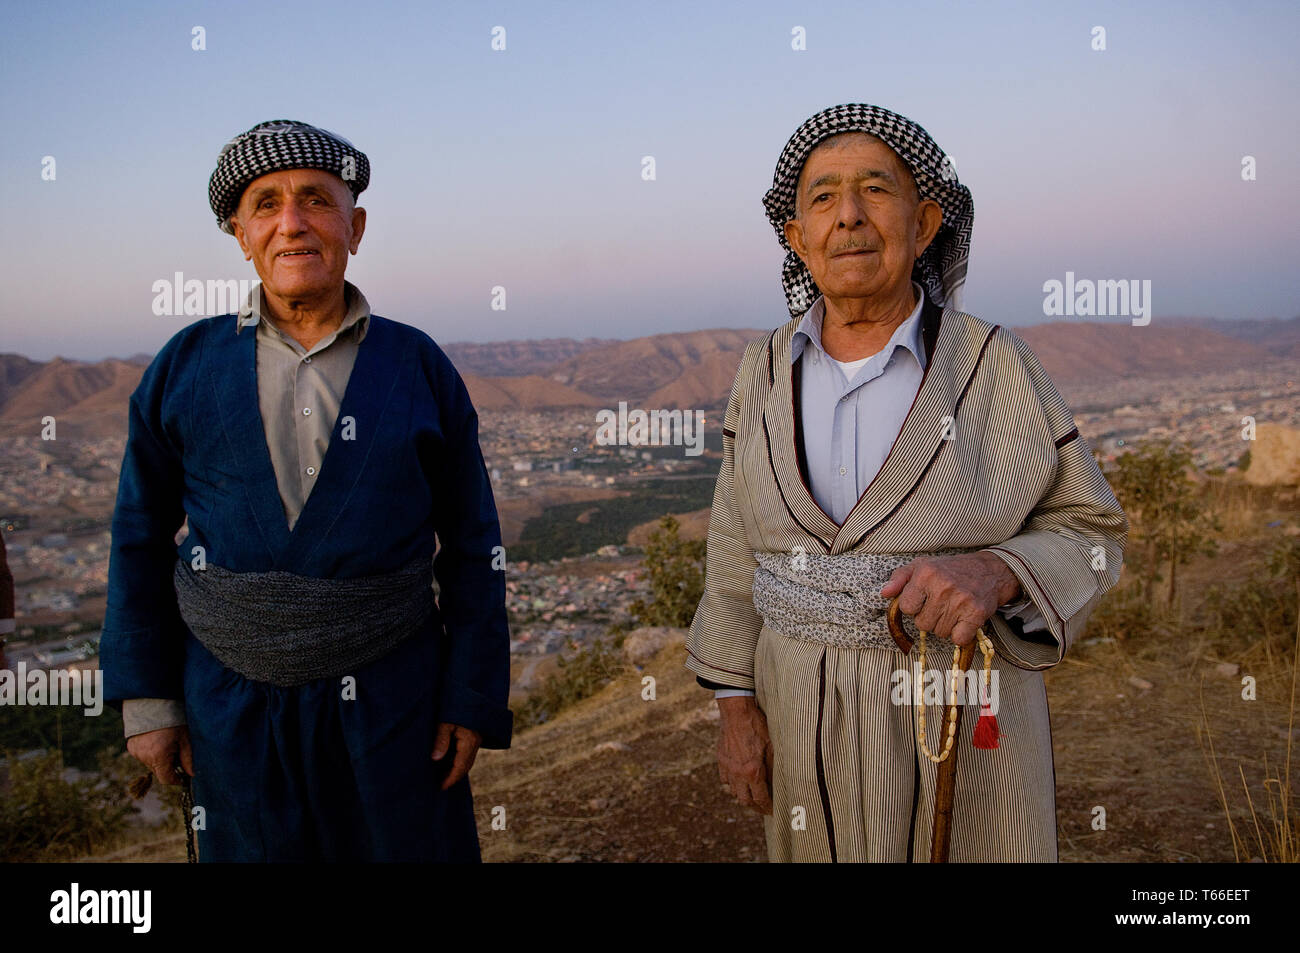 Traditionelle Kurdische Kleidung Stockfotos und -bilder Kaufen - Alamy